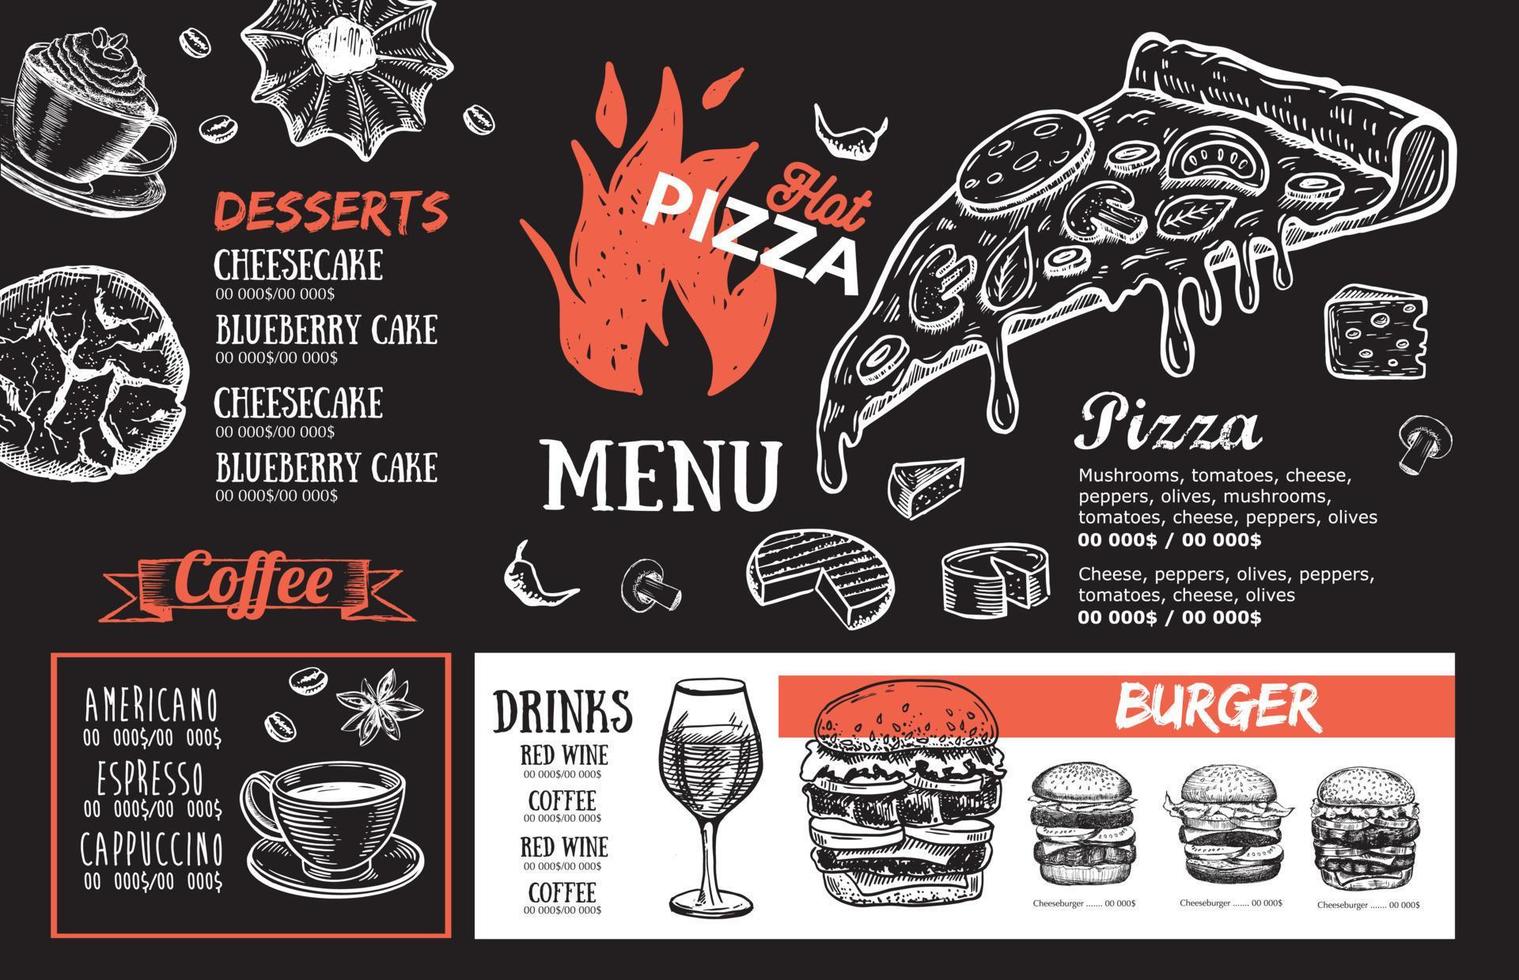 Adobe Illustrator kunstwerkpizza Essen Speisekarte, Restaurant, Cafe, Vorlage Design. Hand gezeichnet Illustrationen, Essen Flyer. vektor